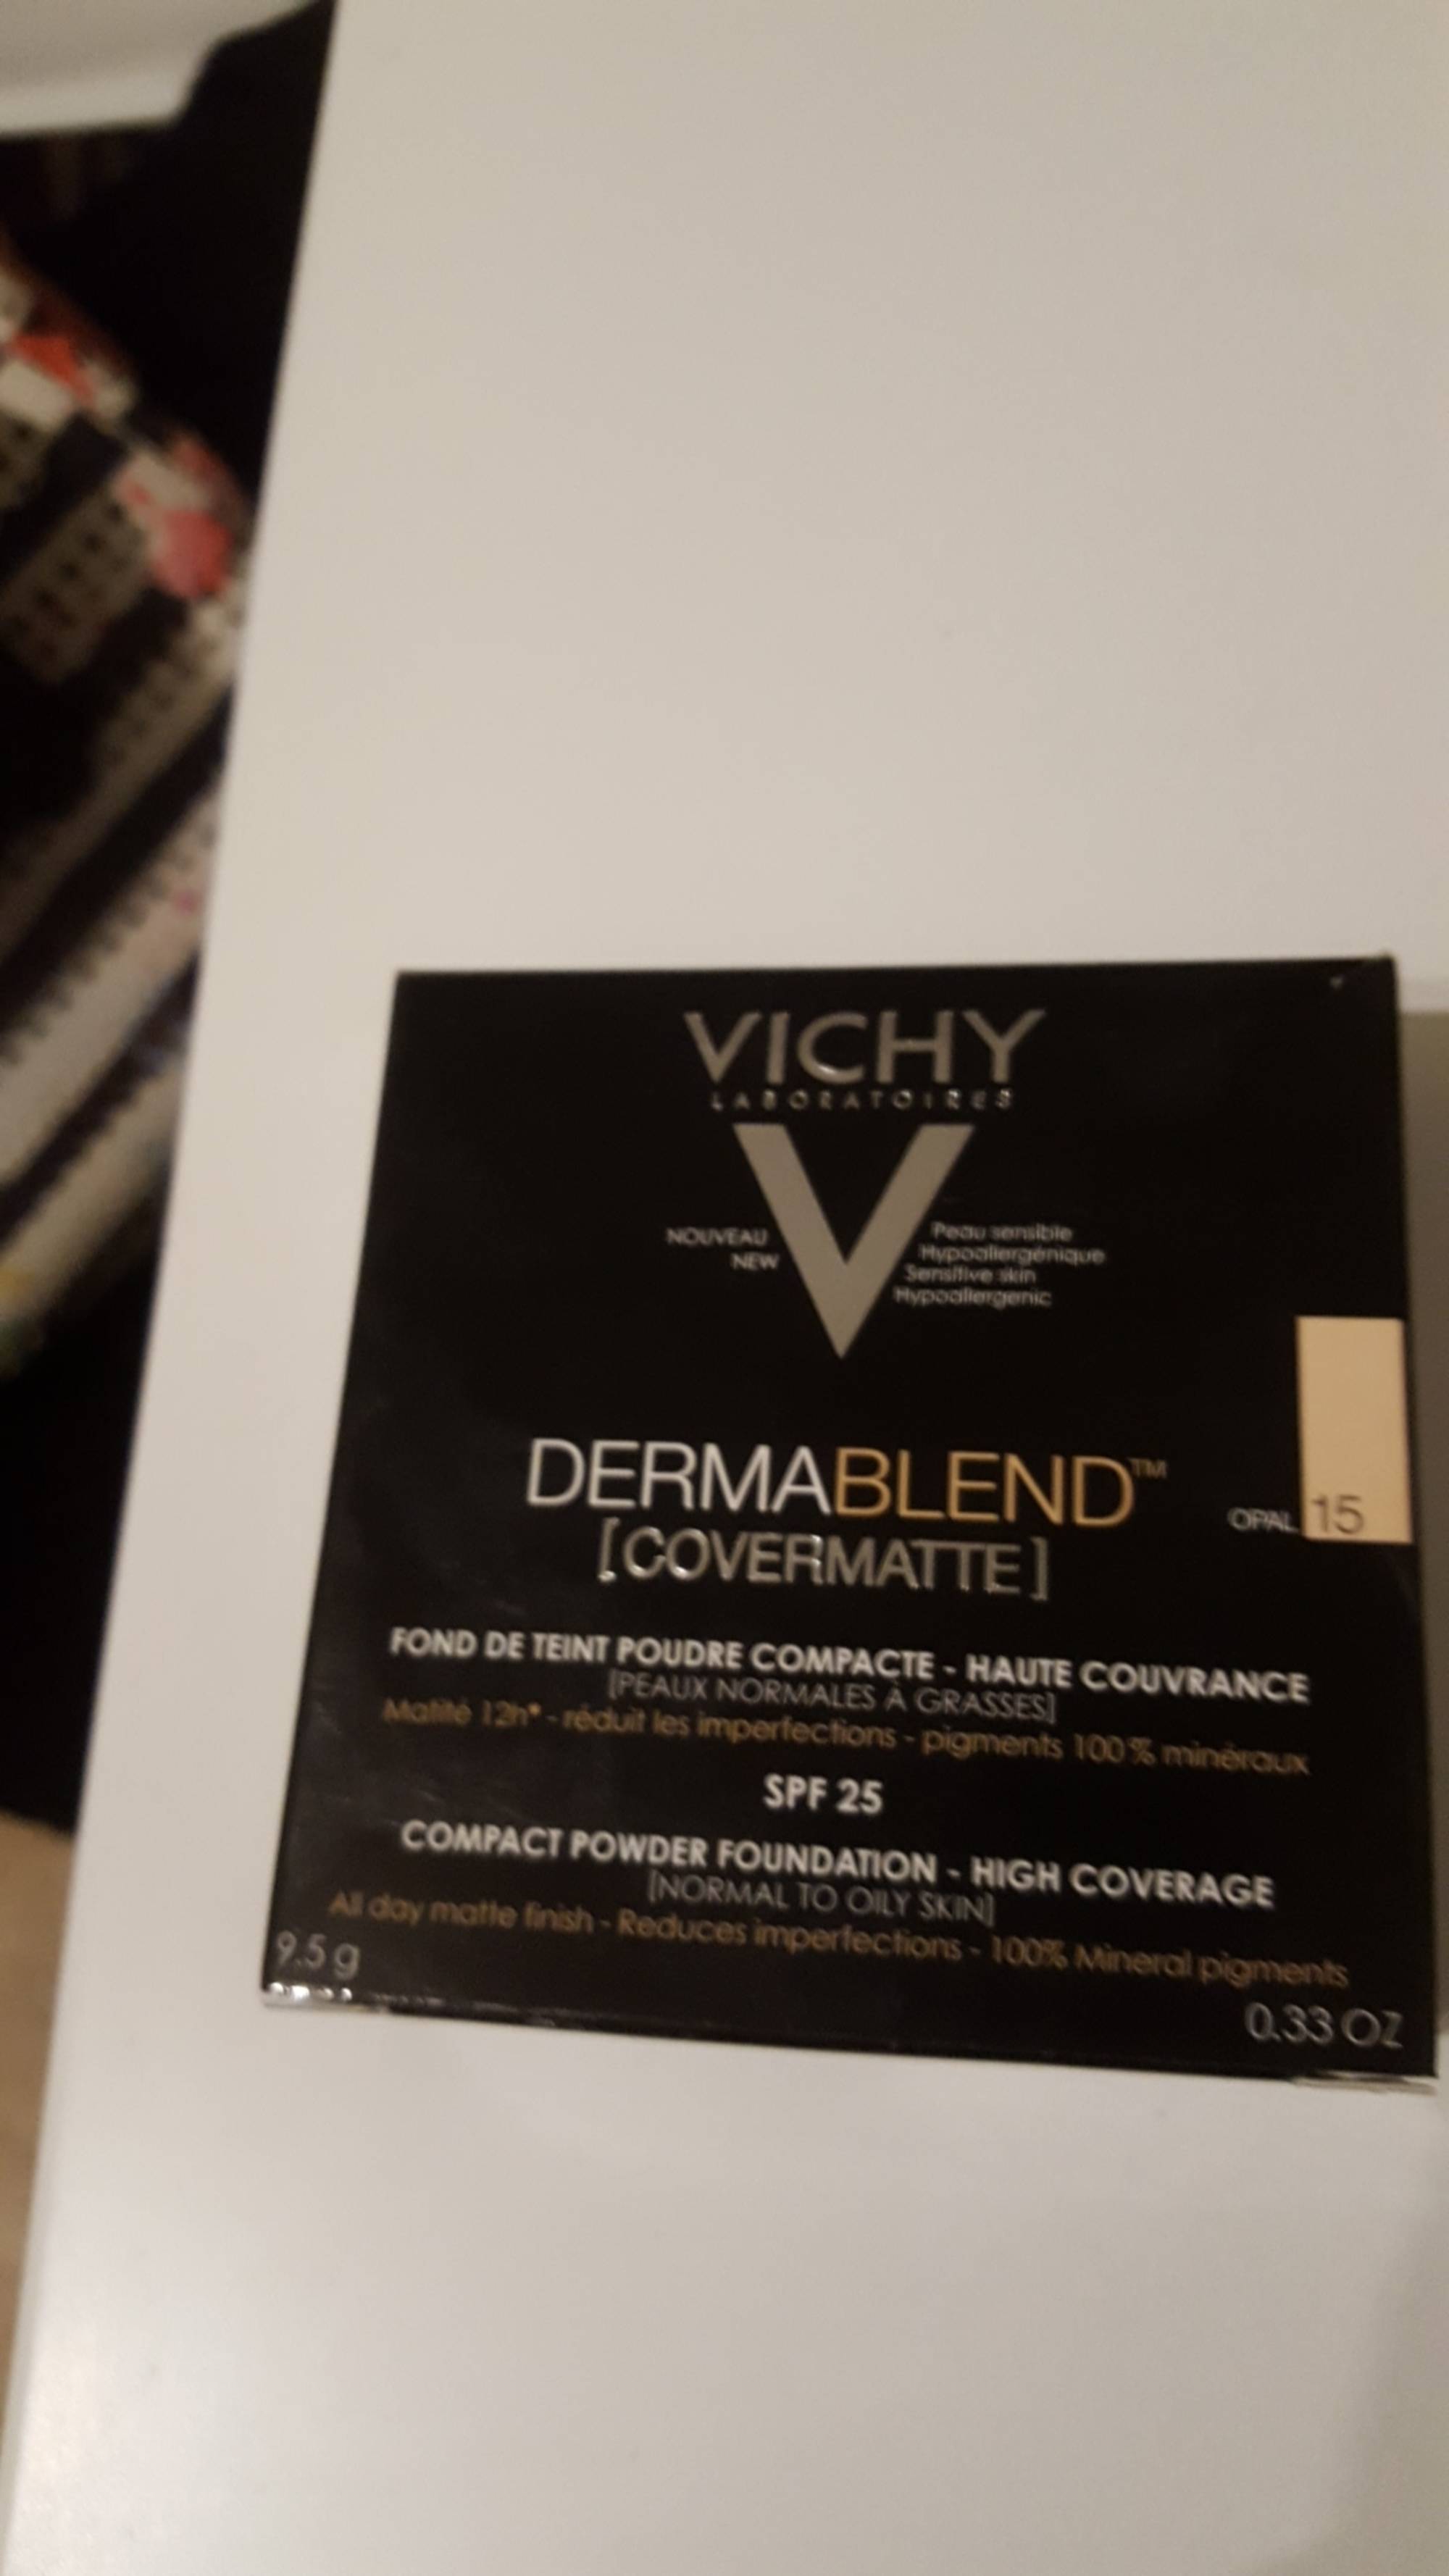 VICHY - Dermablend - Fond de teint poudre compacte SPF 25